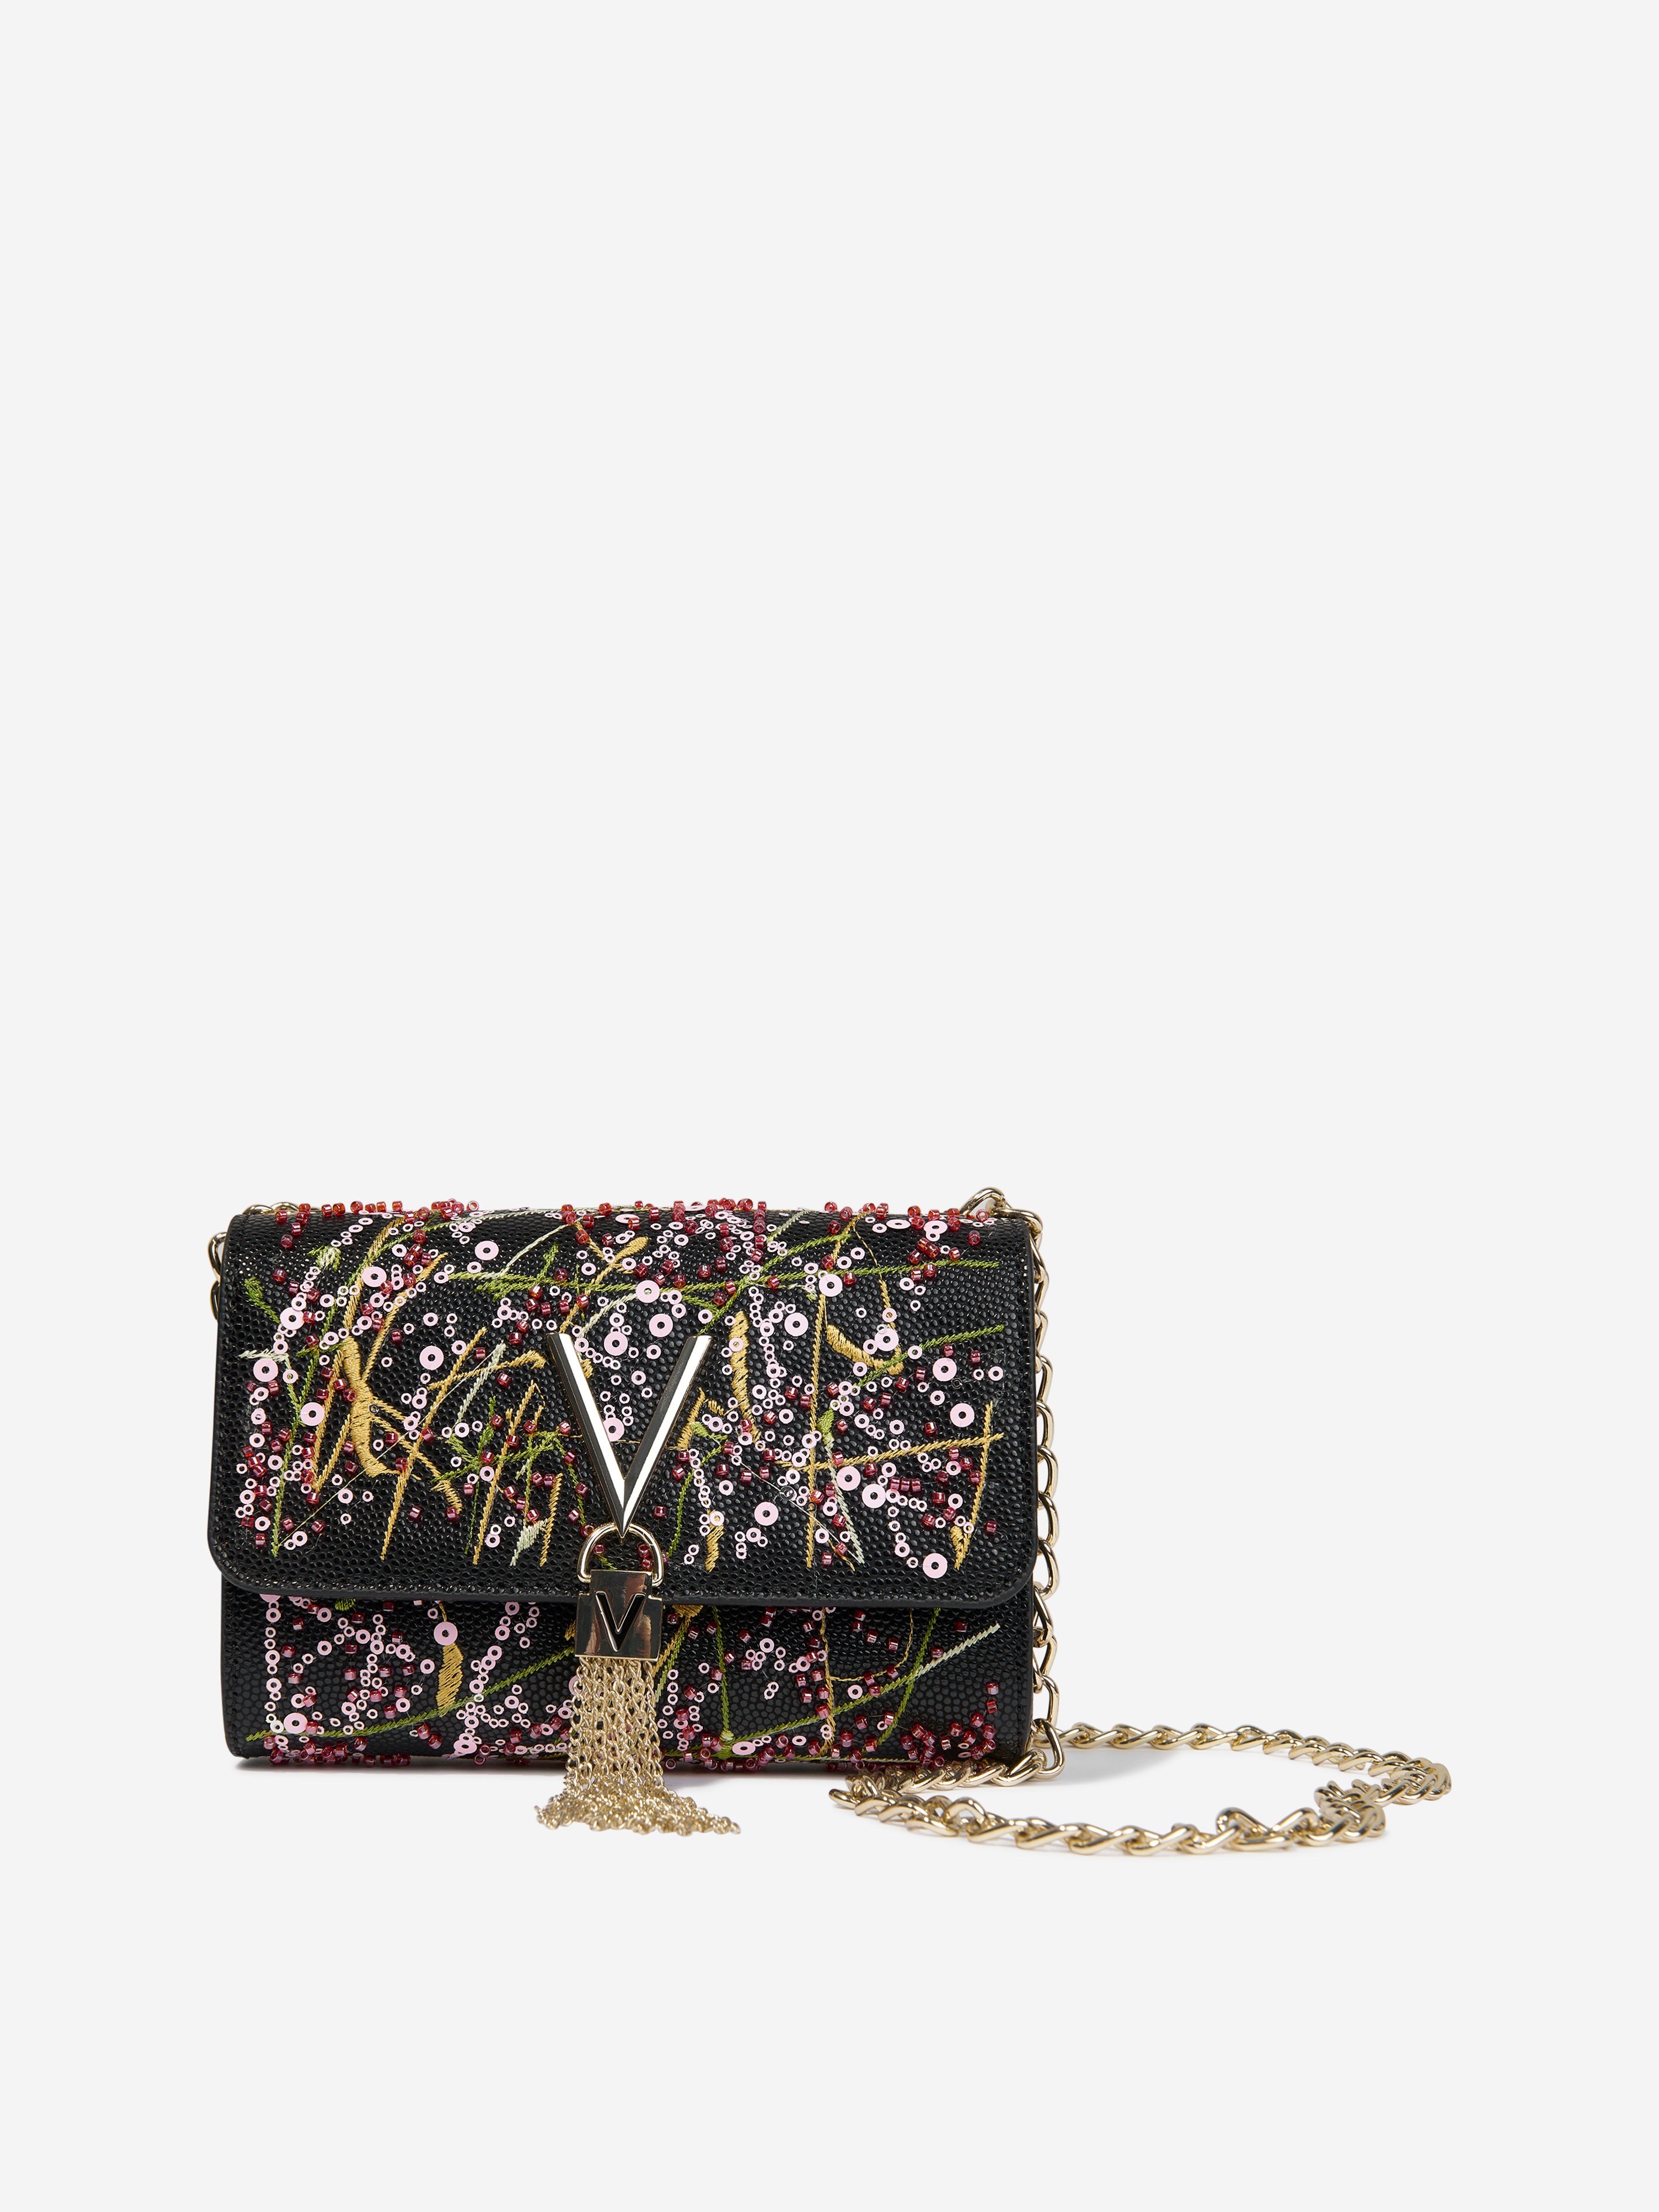 Mario Valentino Cross-Body Bags, Nero/Multicolor: Handbags